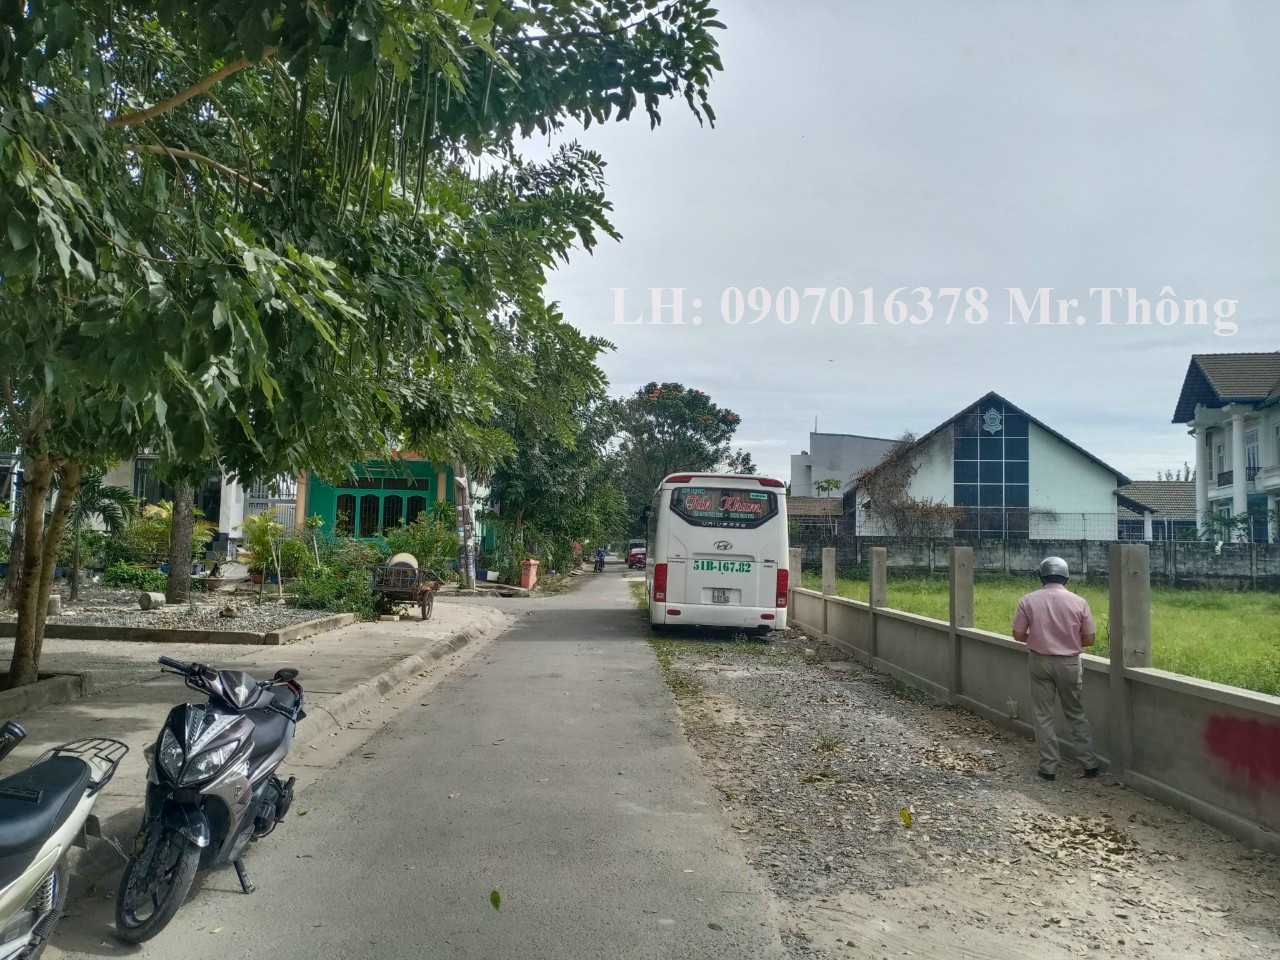 Cần bán Căn hộ chung cư đường Số 179, Phường Tân Phú, Diện tích 1926m², Giá 150 Tỷ - LH: 0907016378 3